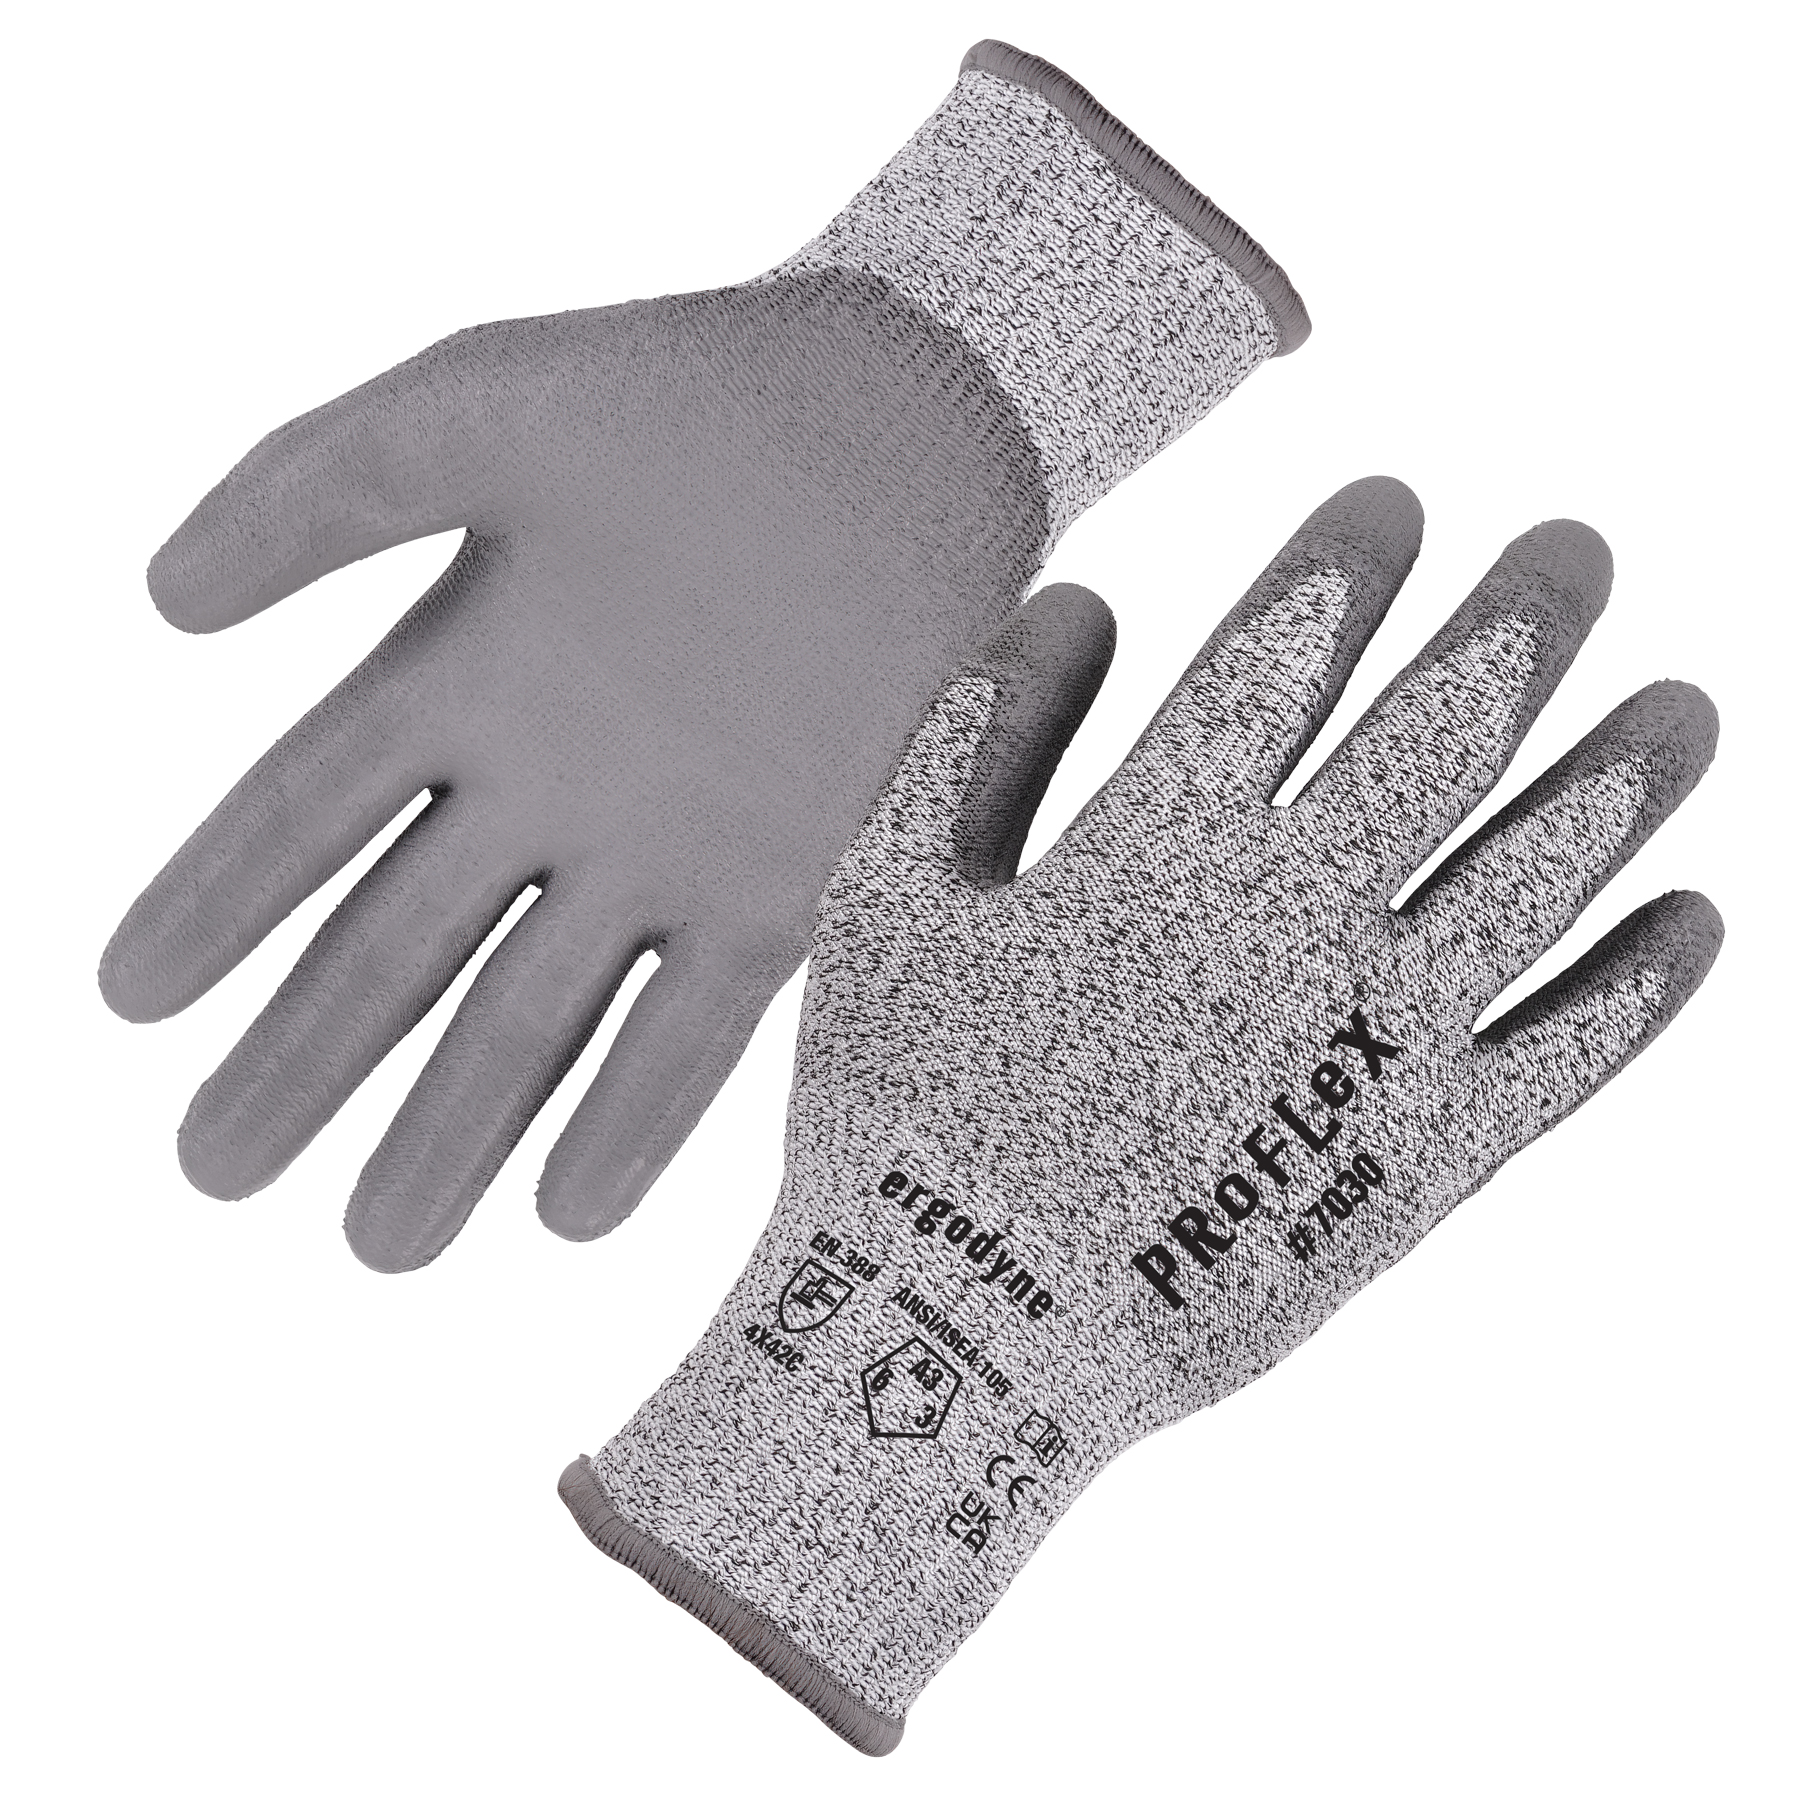 ANSI/ISEA 105-2016 A3 PU Coated CR Gloves